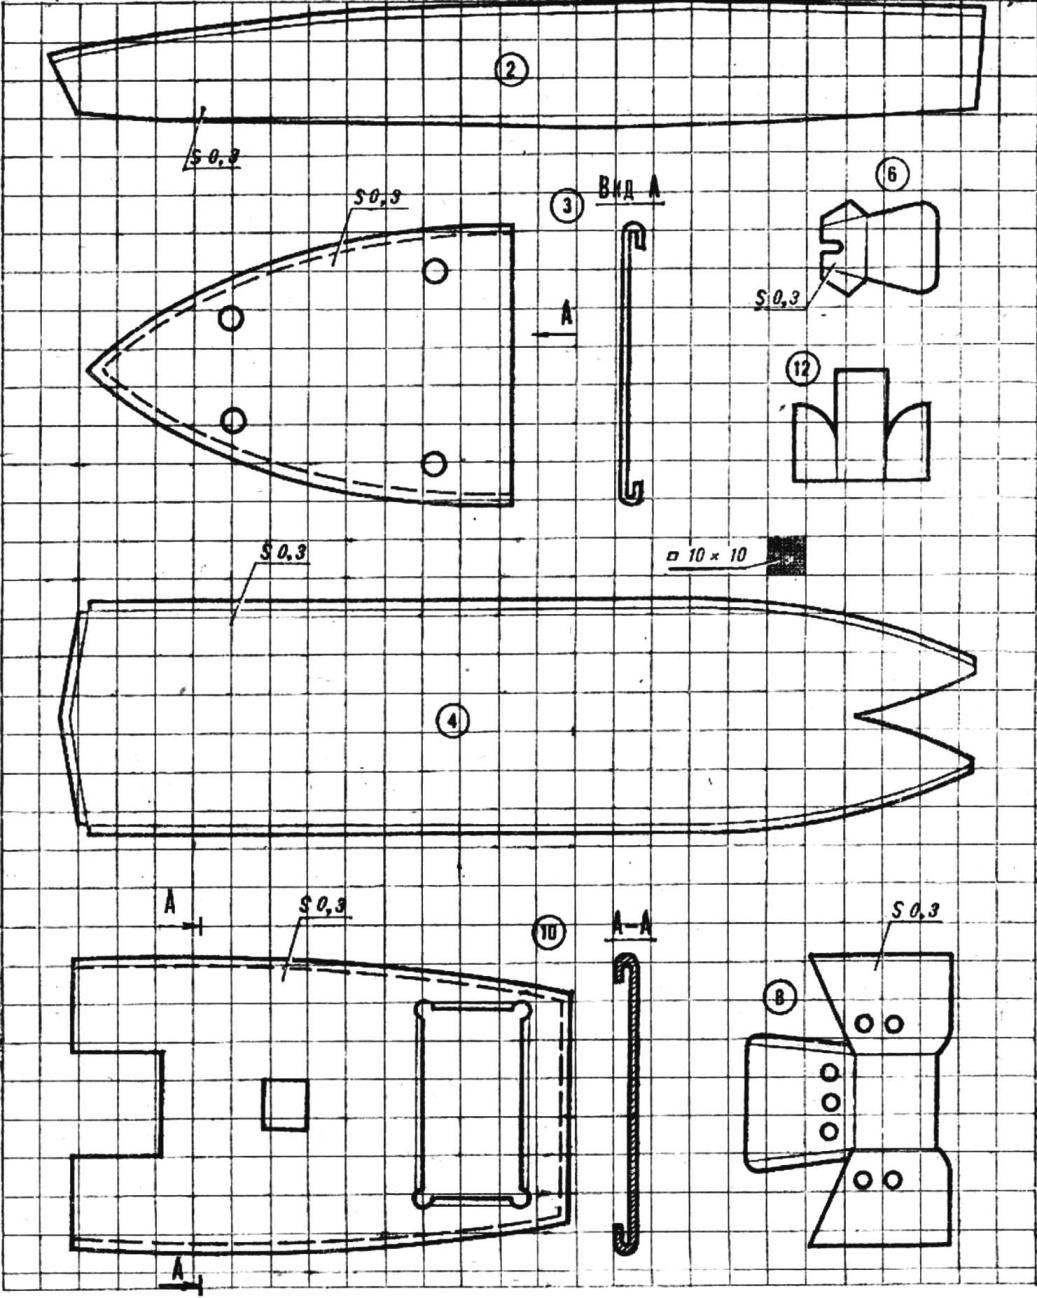 Модель торпедного катера с пароводяным пульсирующим двигателем